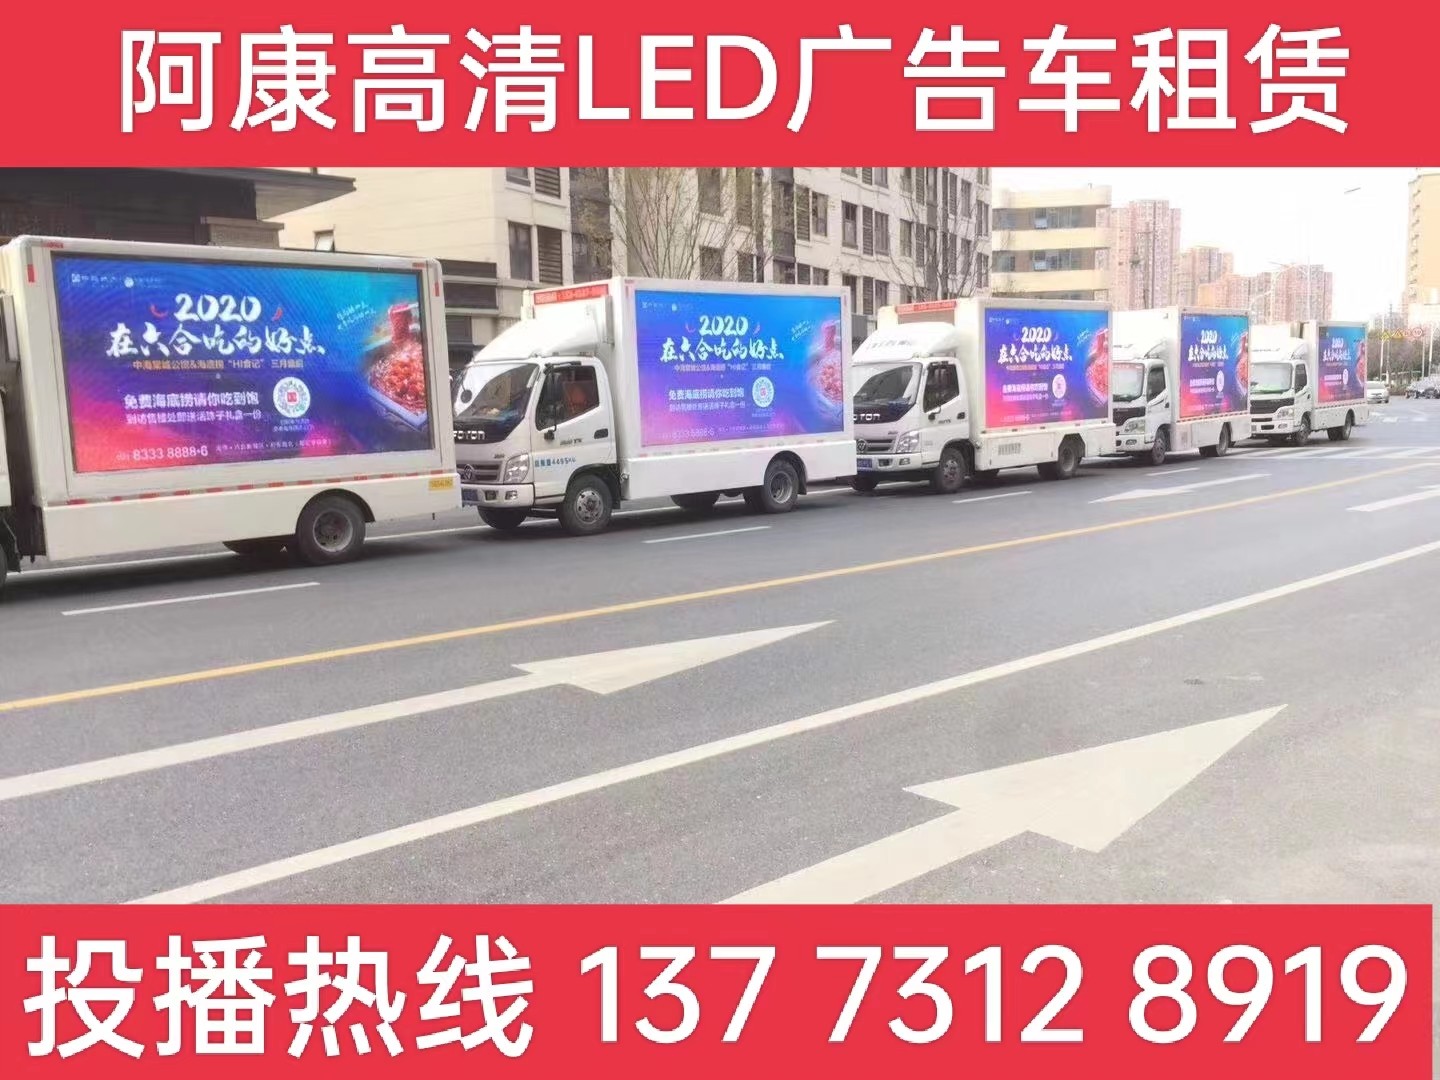 高淳区宣传车出租-海底捞LED广告